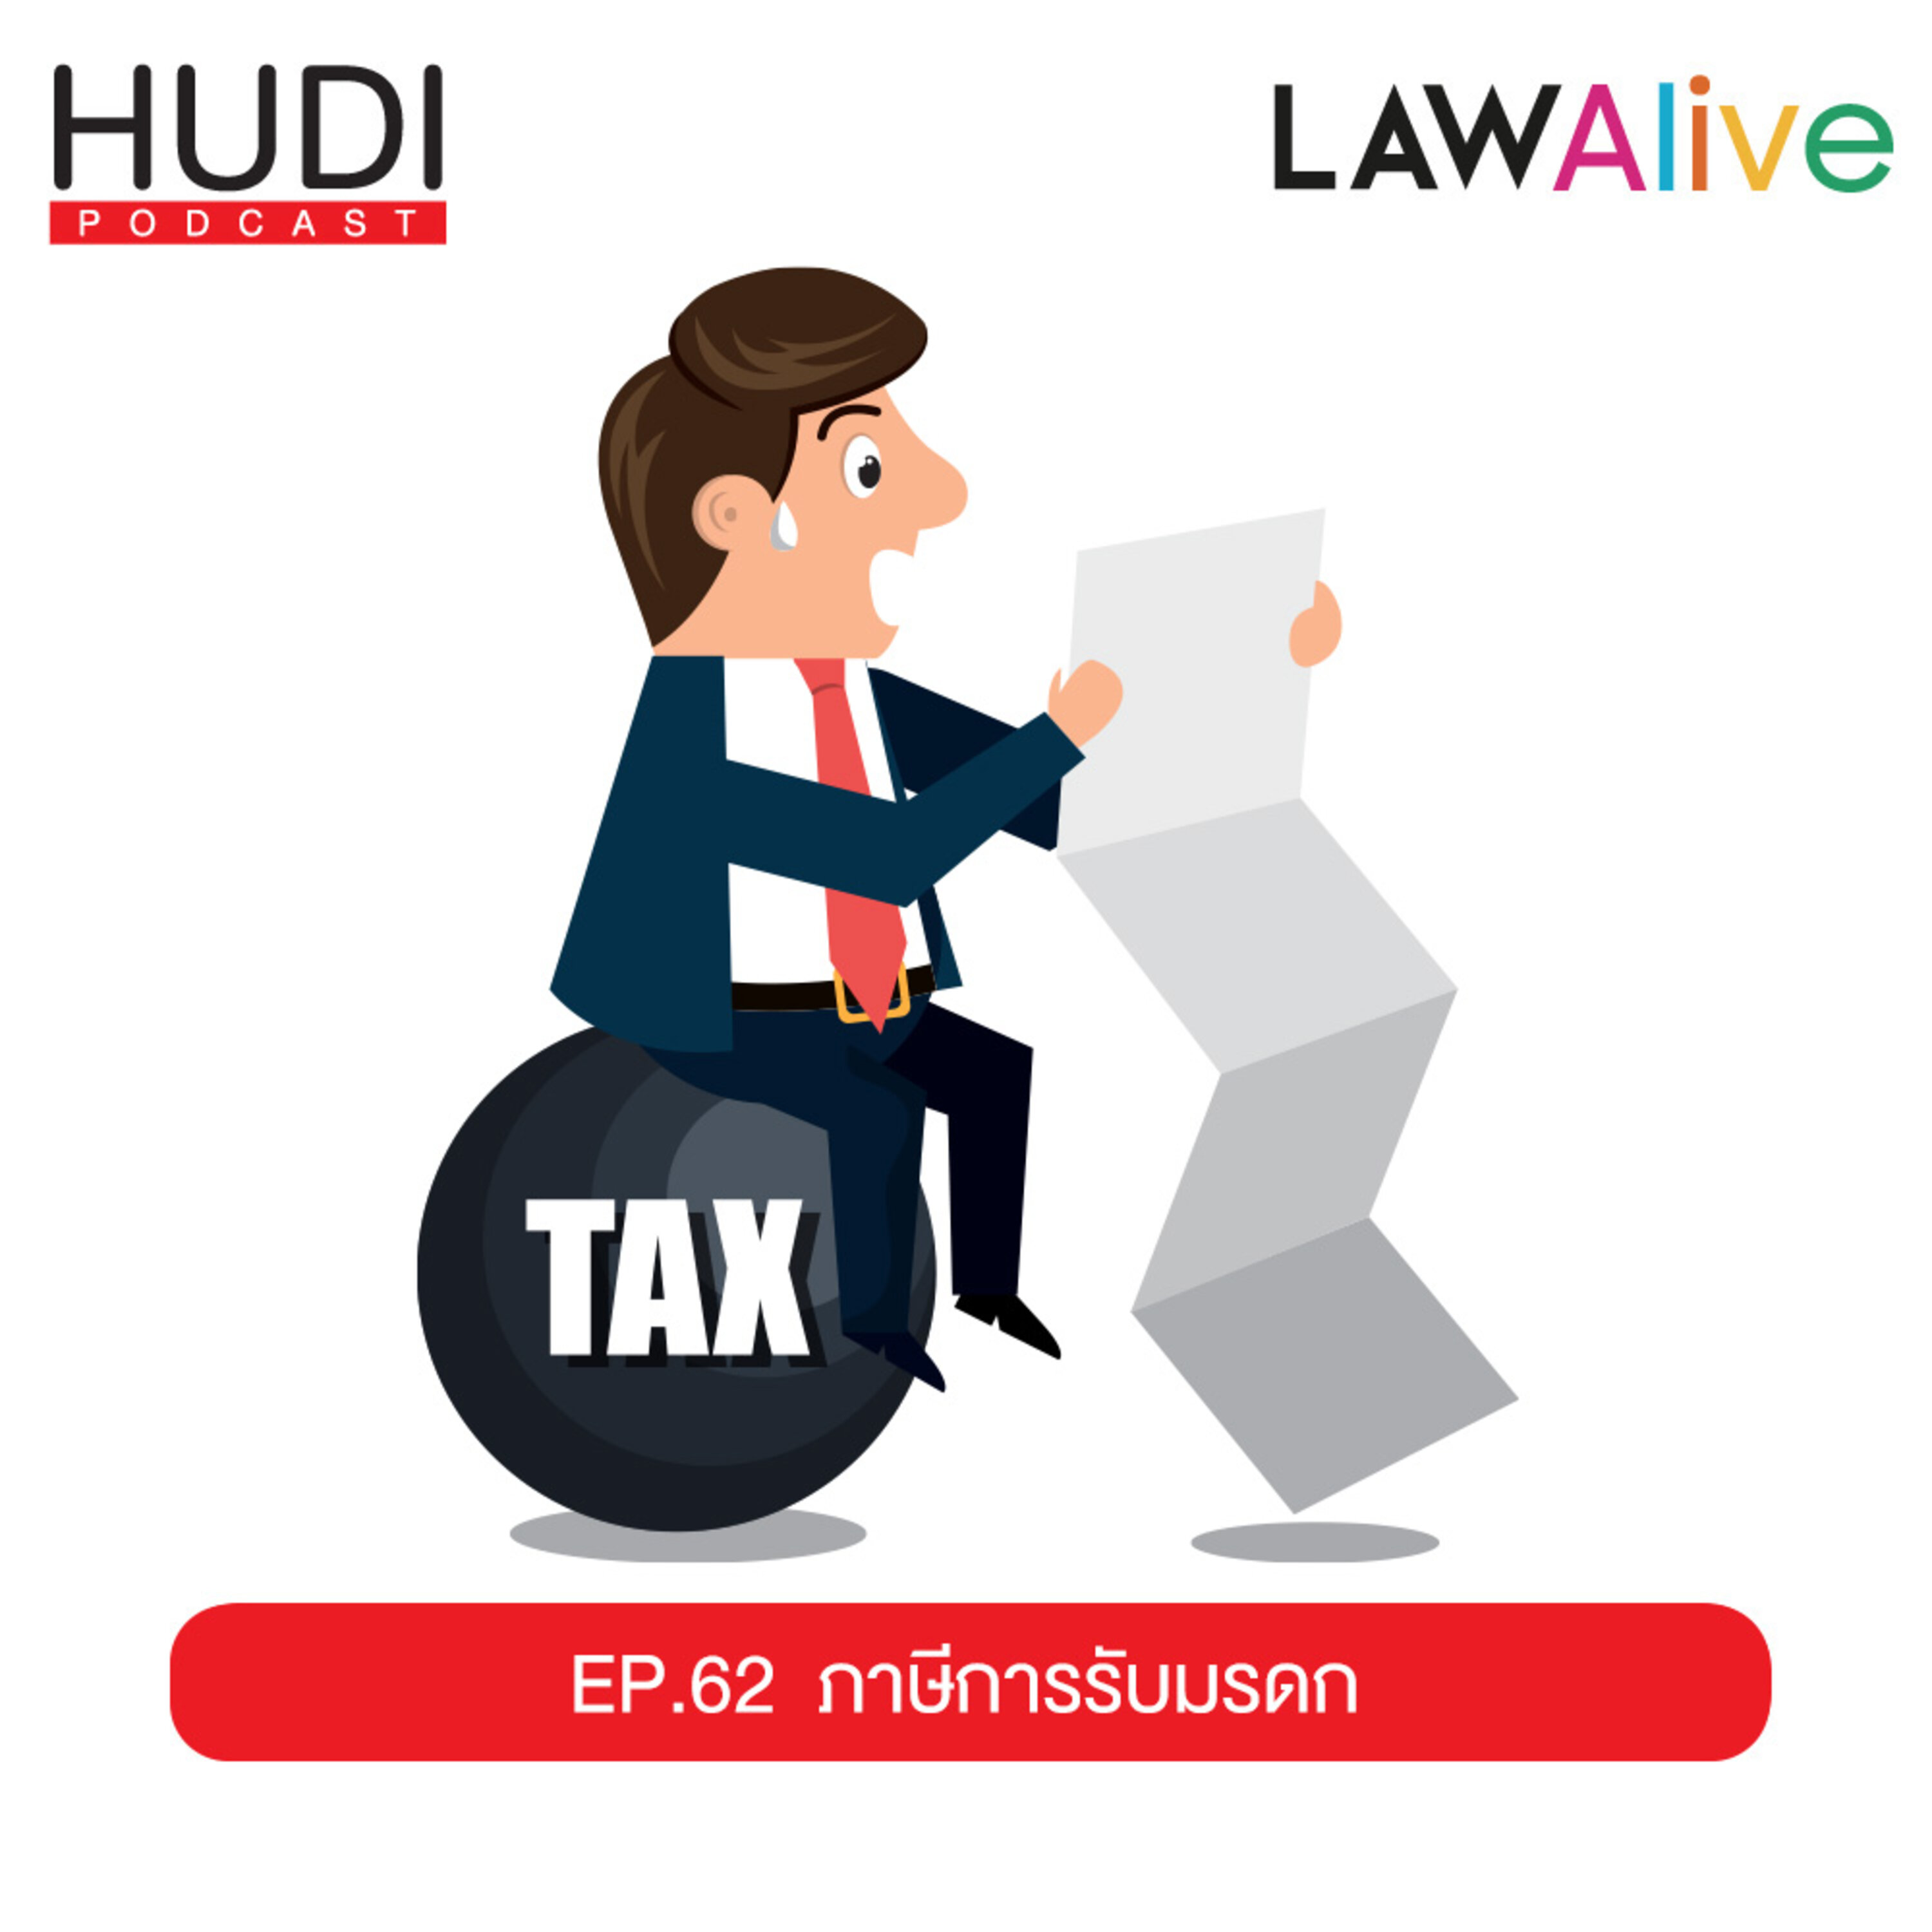 รับมรดกแต่โดนหักภาษี Hudi Podcast: Law Alive Ep.62